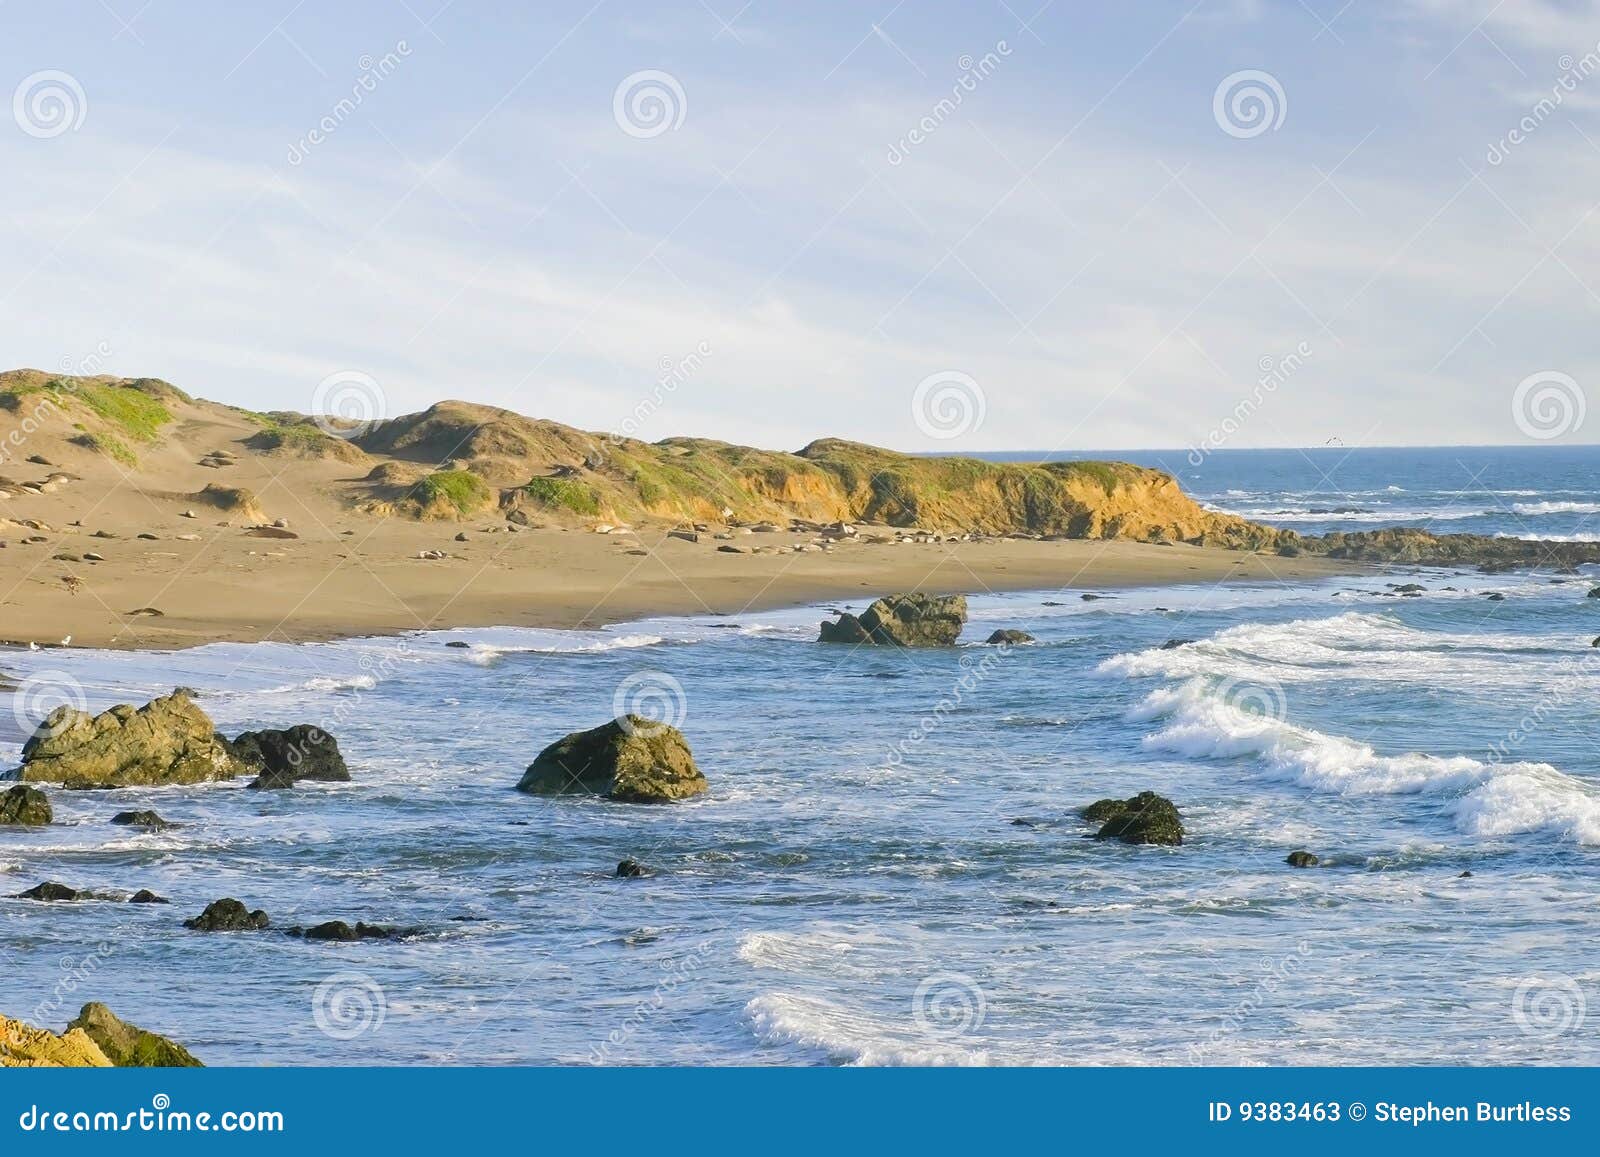 piedras blancas beach cambria california